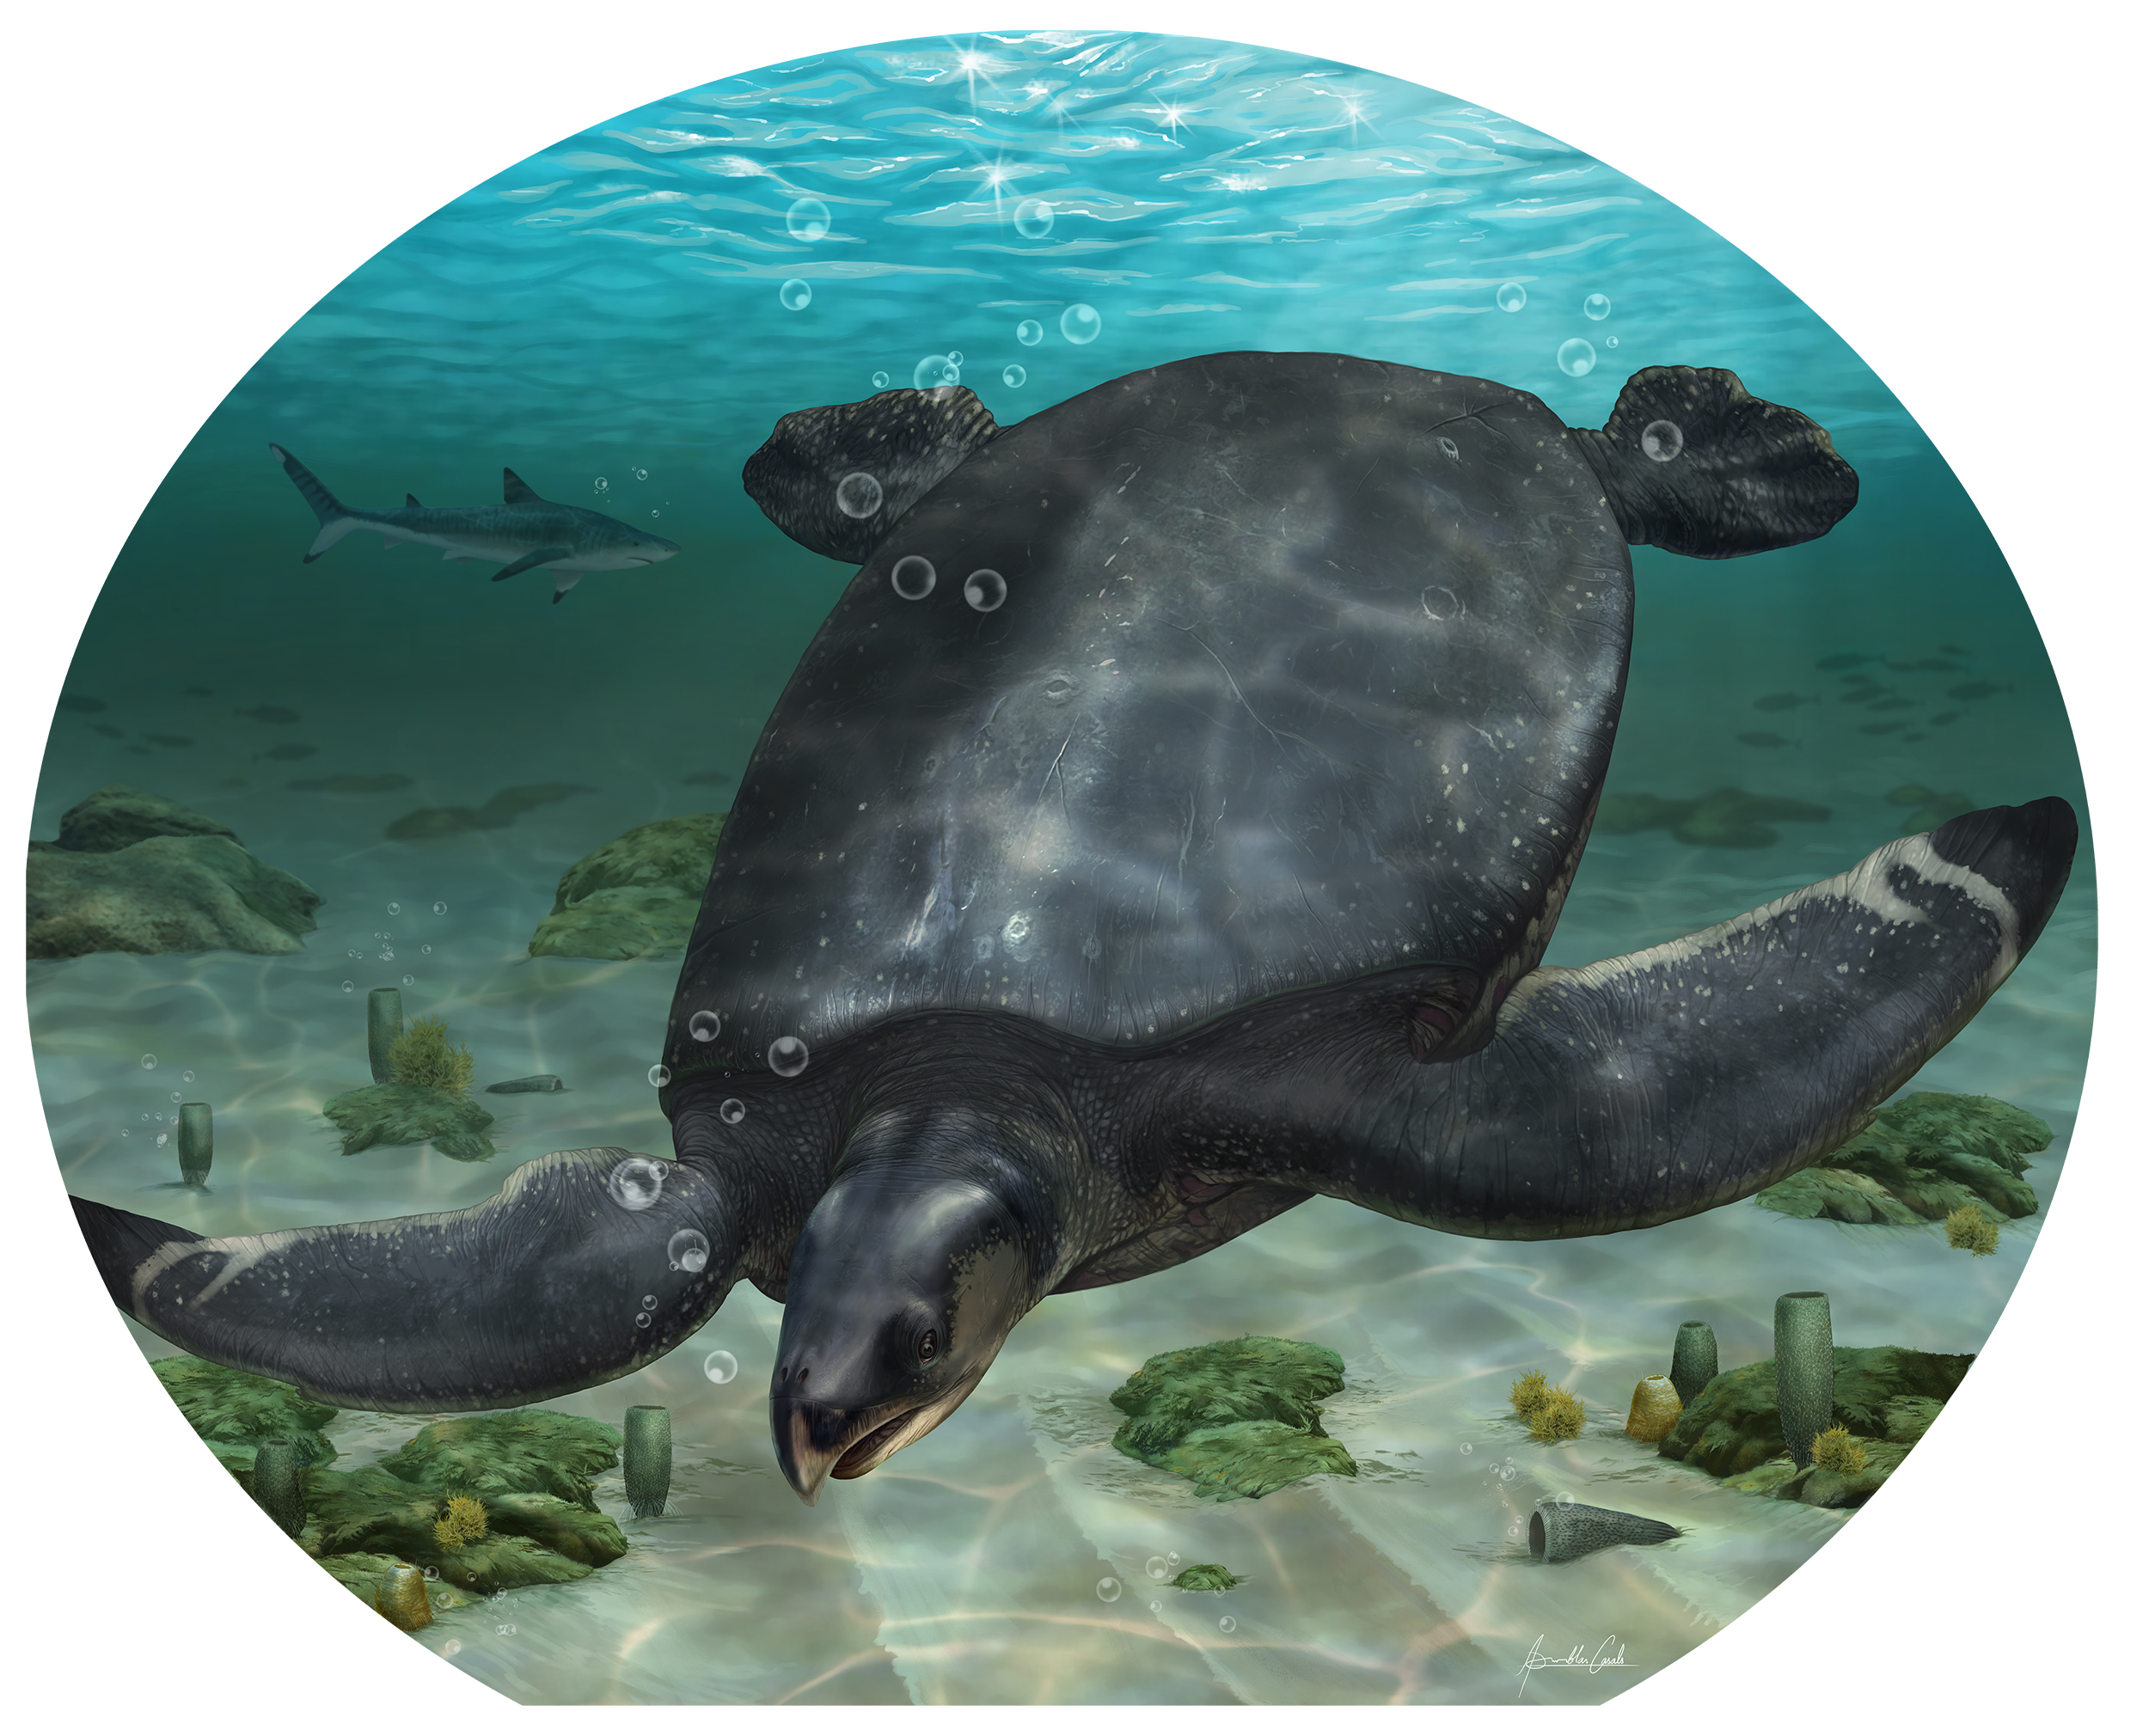 Ανακαλύφθηκε στην Ισπανία απολίθωμα αρχαίας θαλάσσιας χελώνας τεσσάρων μέτρων. Είναι η μεγαλύτερη στην Ευρώπη